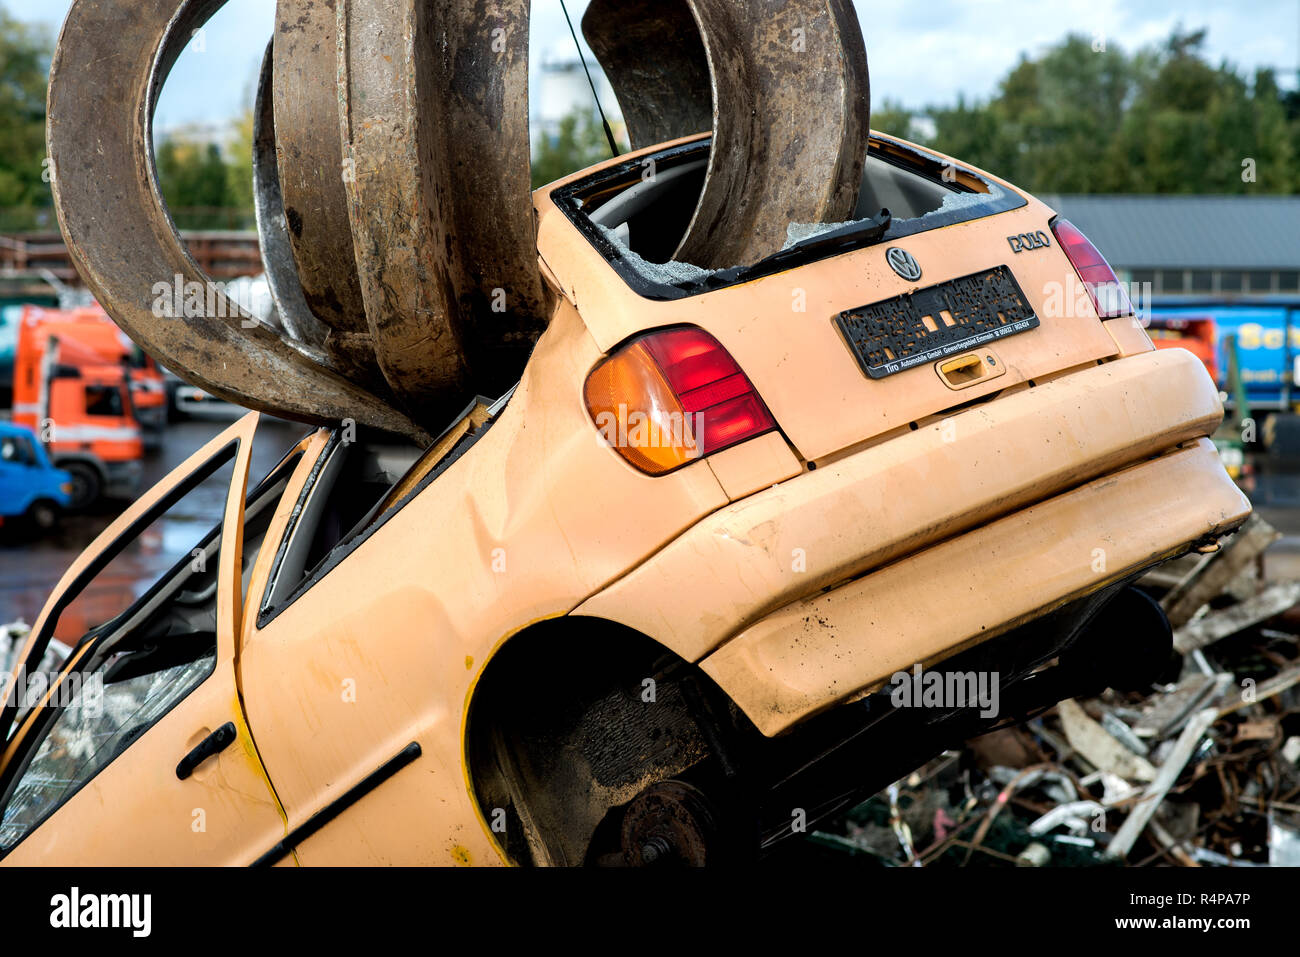 Oldenburg, Allemagne. 25 octobre, 2018. Une Volkswagen Polo accident de  voiture se bloque à partir d'une pelle dans un chantier de recyclage. Dans  la lutte contre les interdictions de circuler, Volkswagen veut